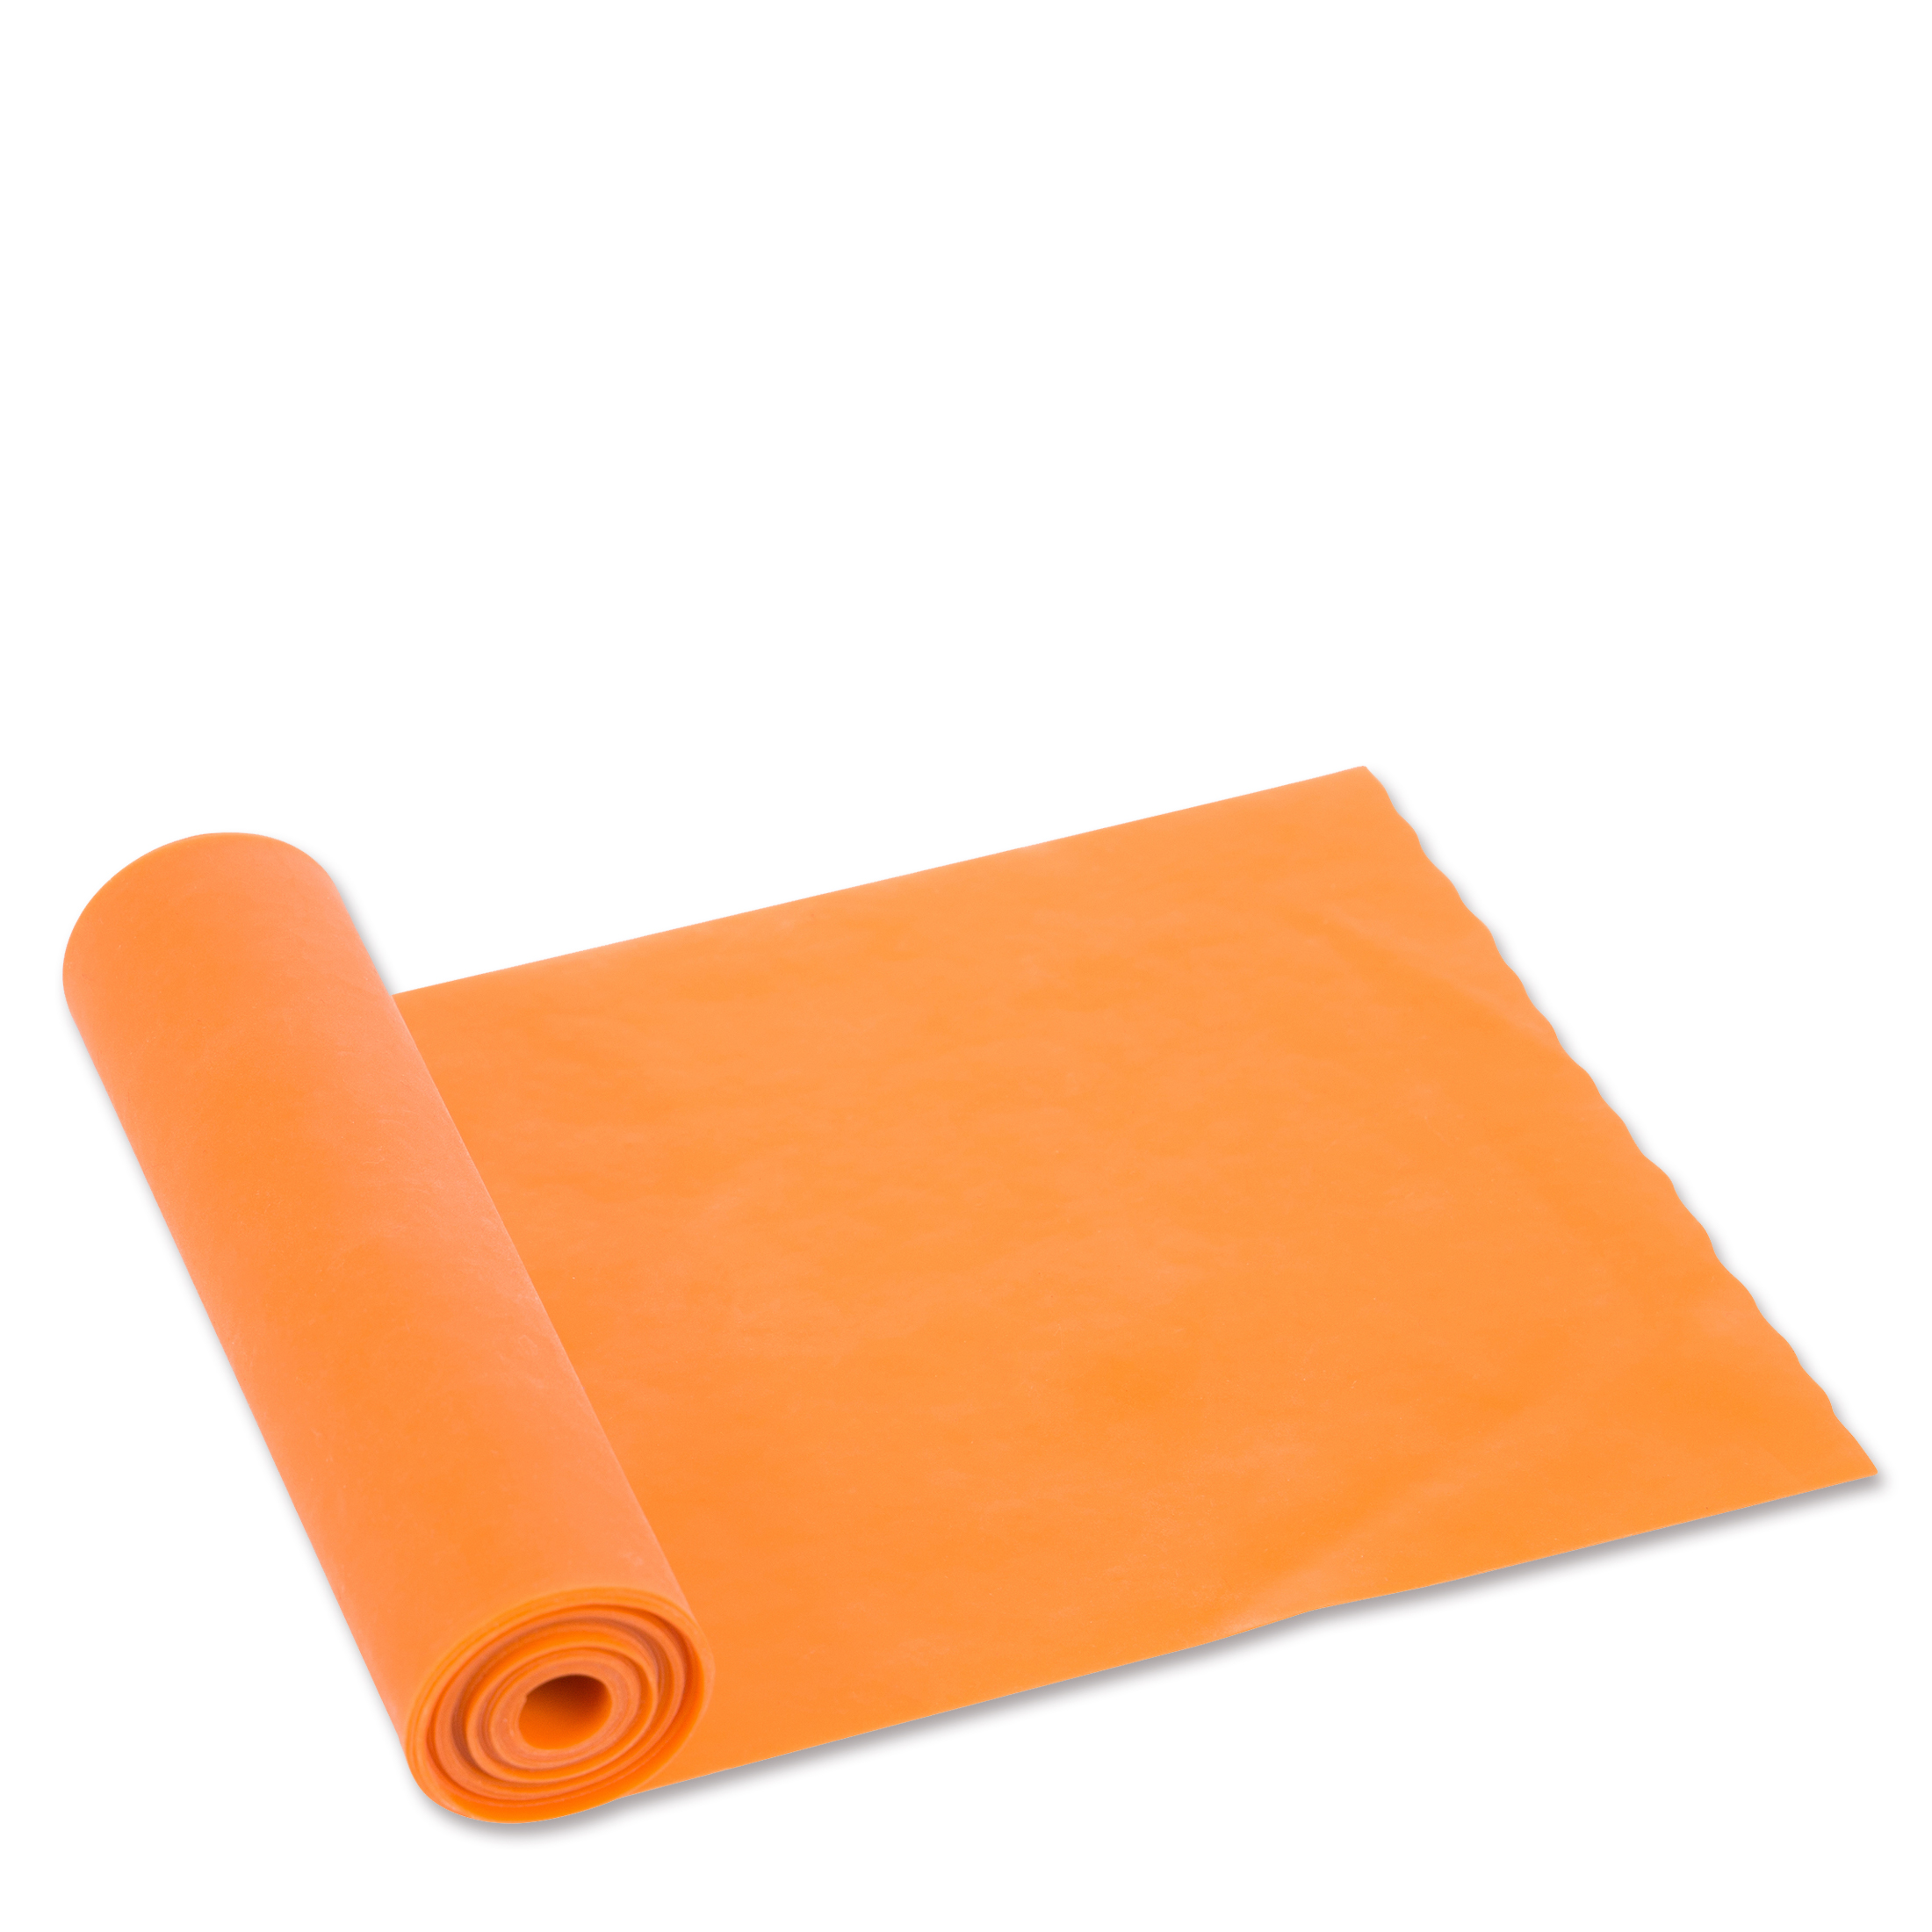 Krafttraining Widerstand, Elastische elastisches für zuhause ZOOMYO Stretchband, mit unterschiedlichem Orange Trainingsband Fitnessband